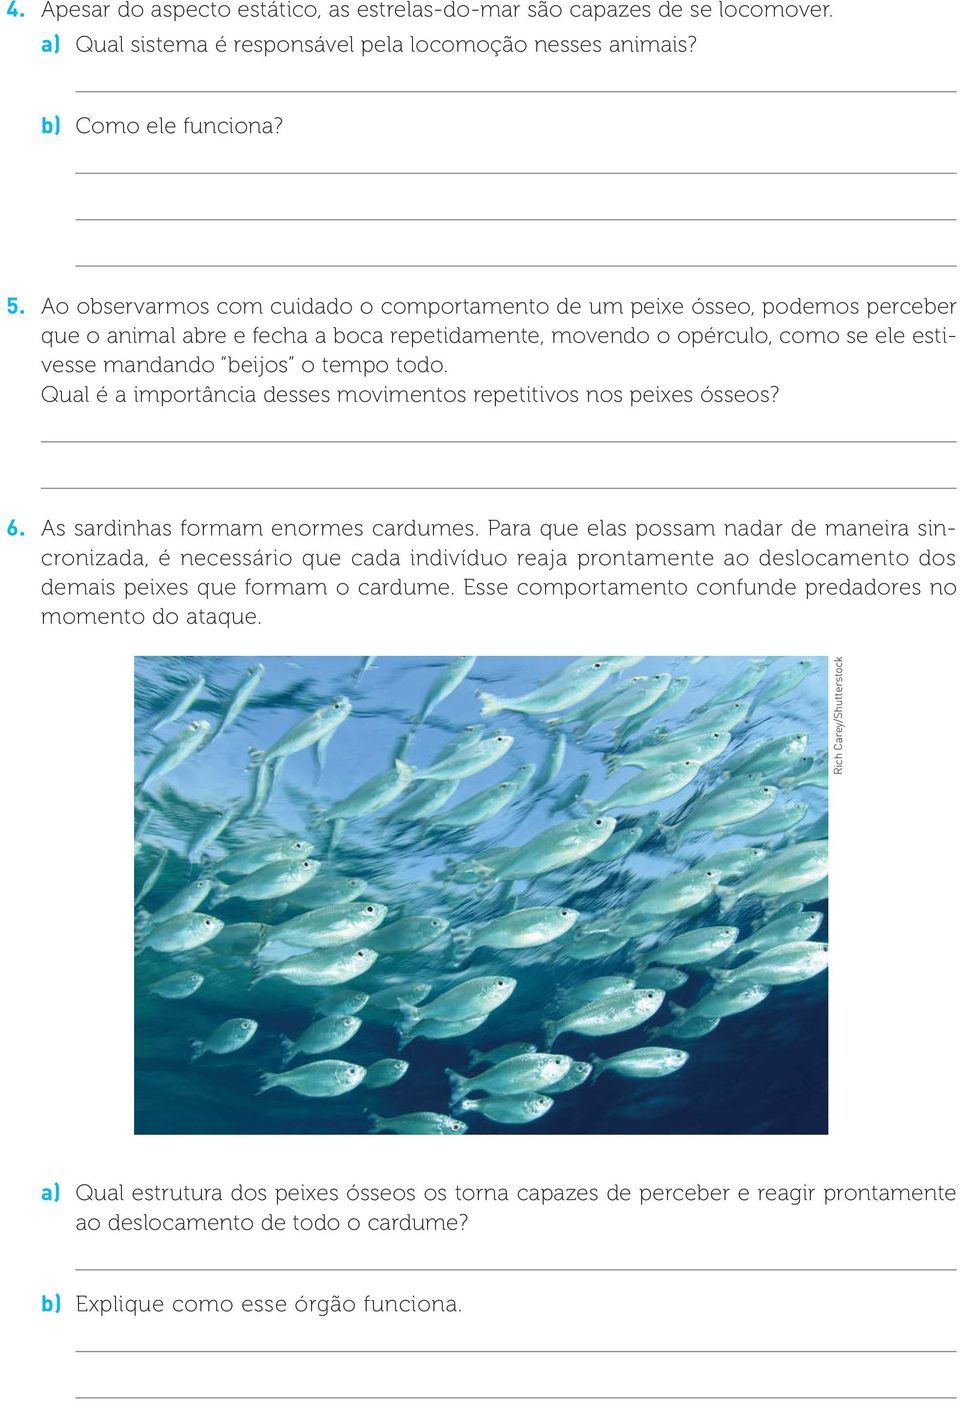 Qual é a importância desses movimentos repetitivos nos peixes ósseos? 6. As sardinhas formam enormes cardumes.